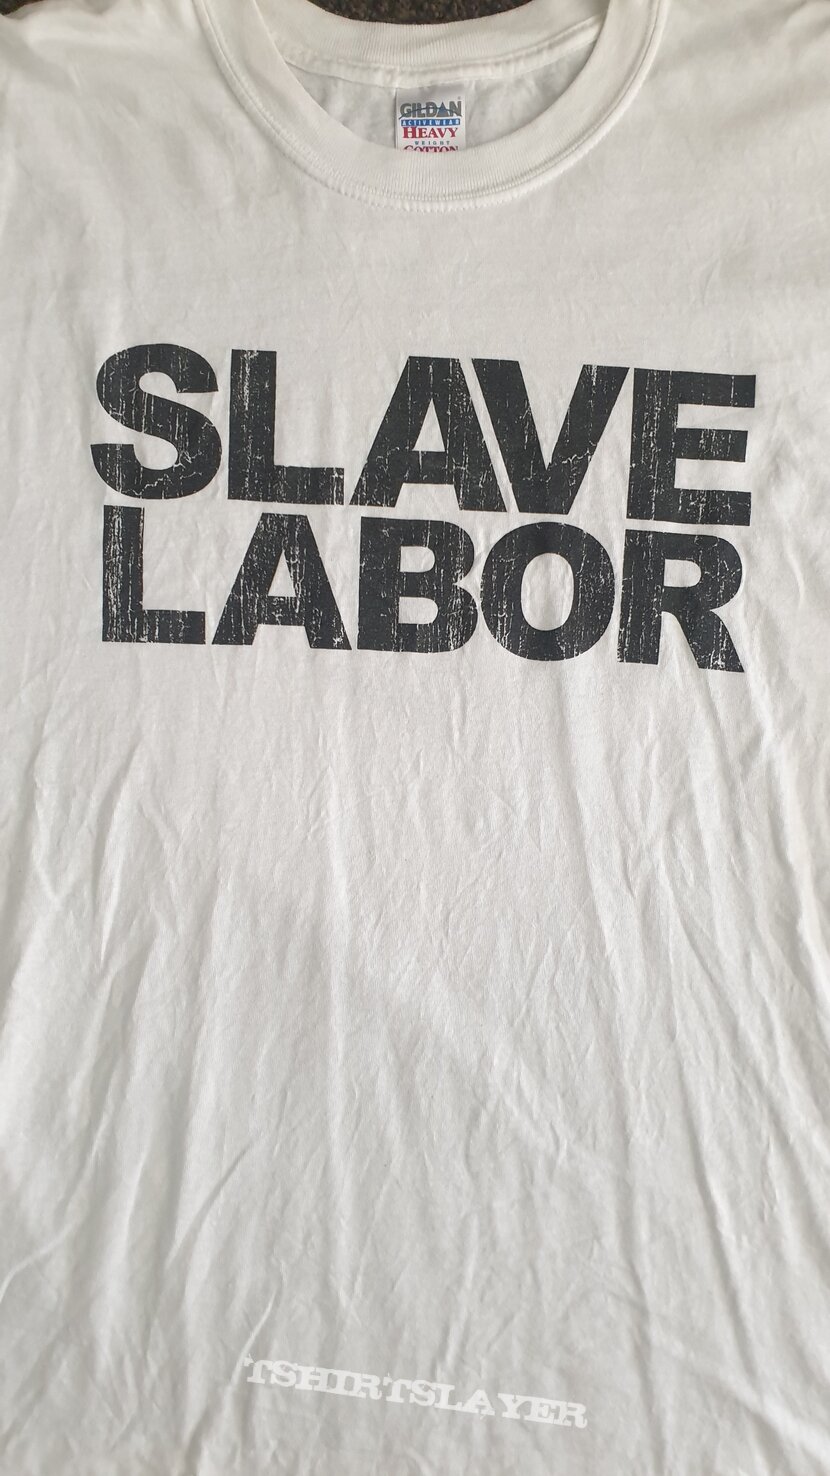 FEAR FACTORY slave labor tour t shirt size XL